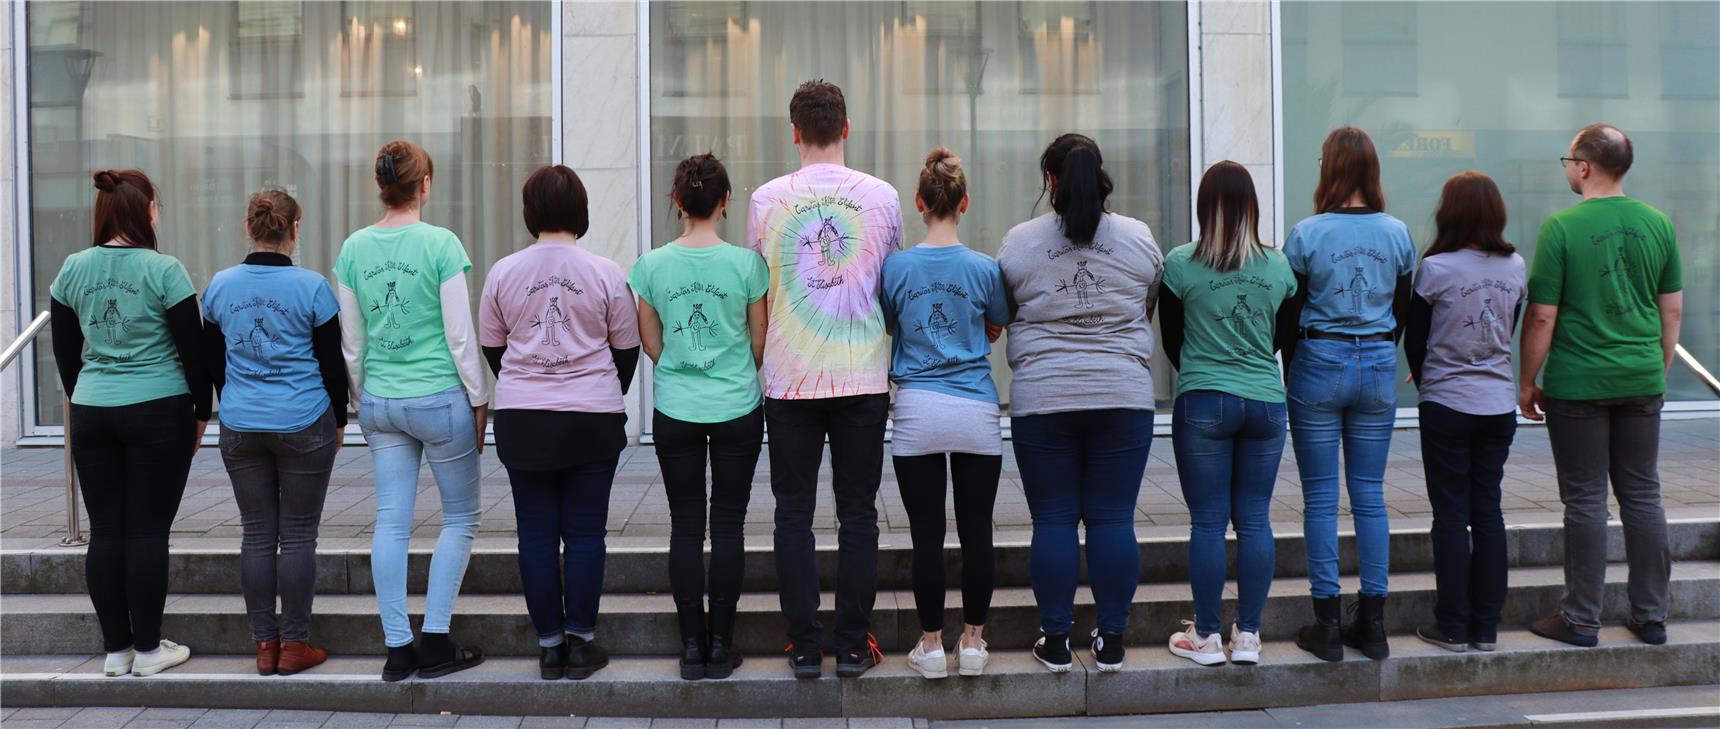 12 Personen mit dem Rücken zum Betrachter, deren T-Shirts alle die selbe Aufschrift "Kita Elifant - St. Elisabeth" tragen